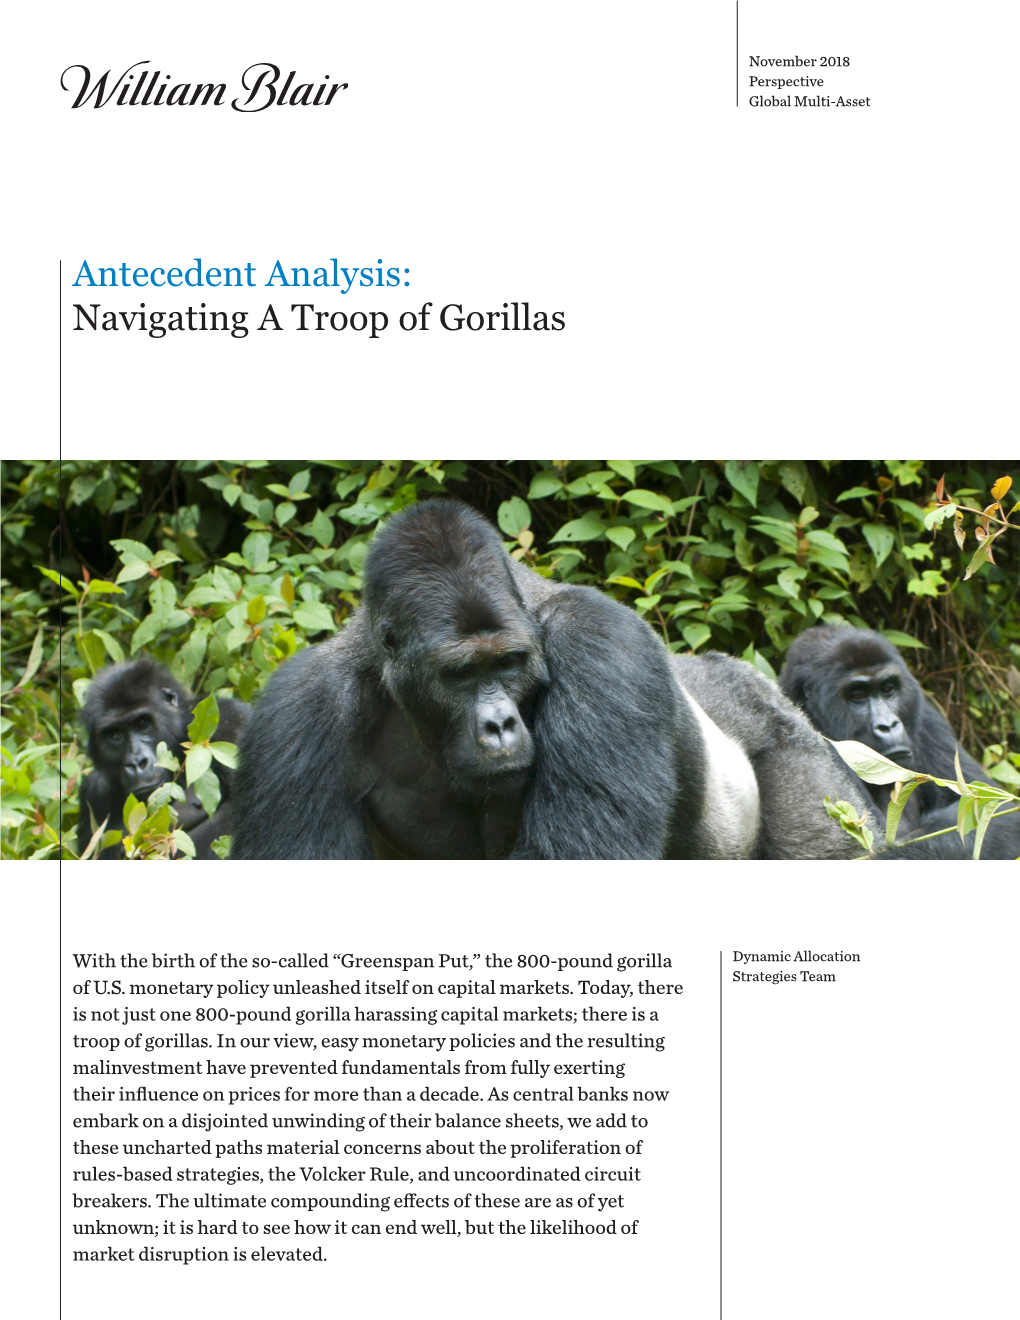 Navigating a Troop of Gorillas